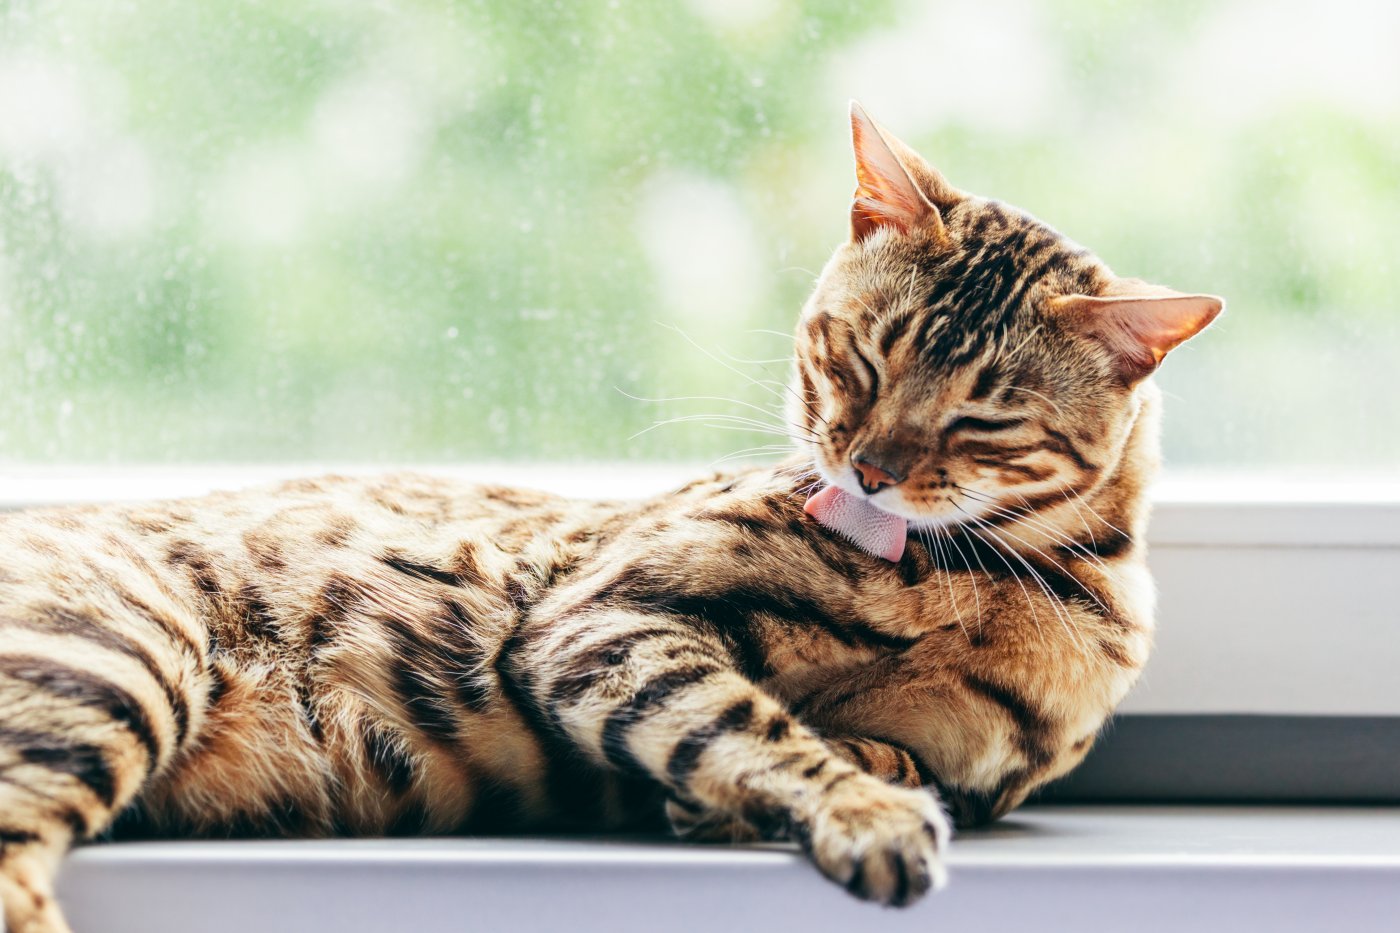 krassen Trechter webspin komen 7 redenen voor een doffe vacht bij je kat